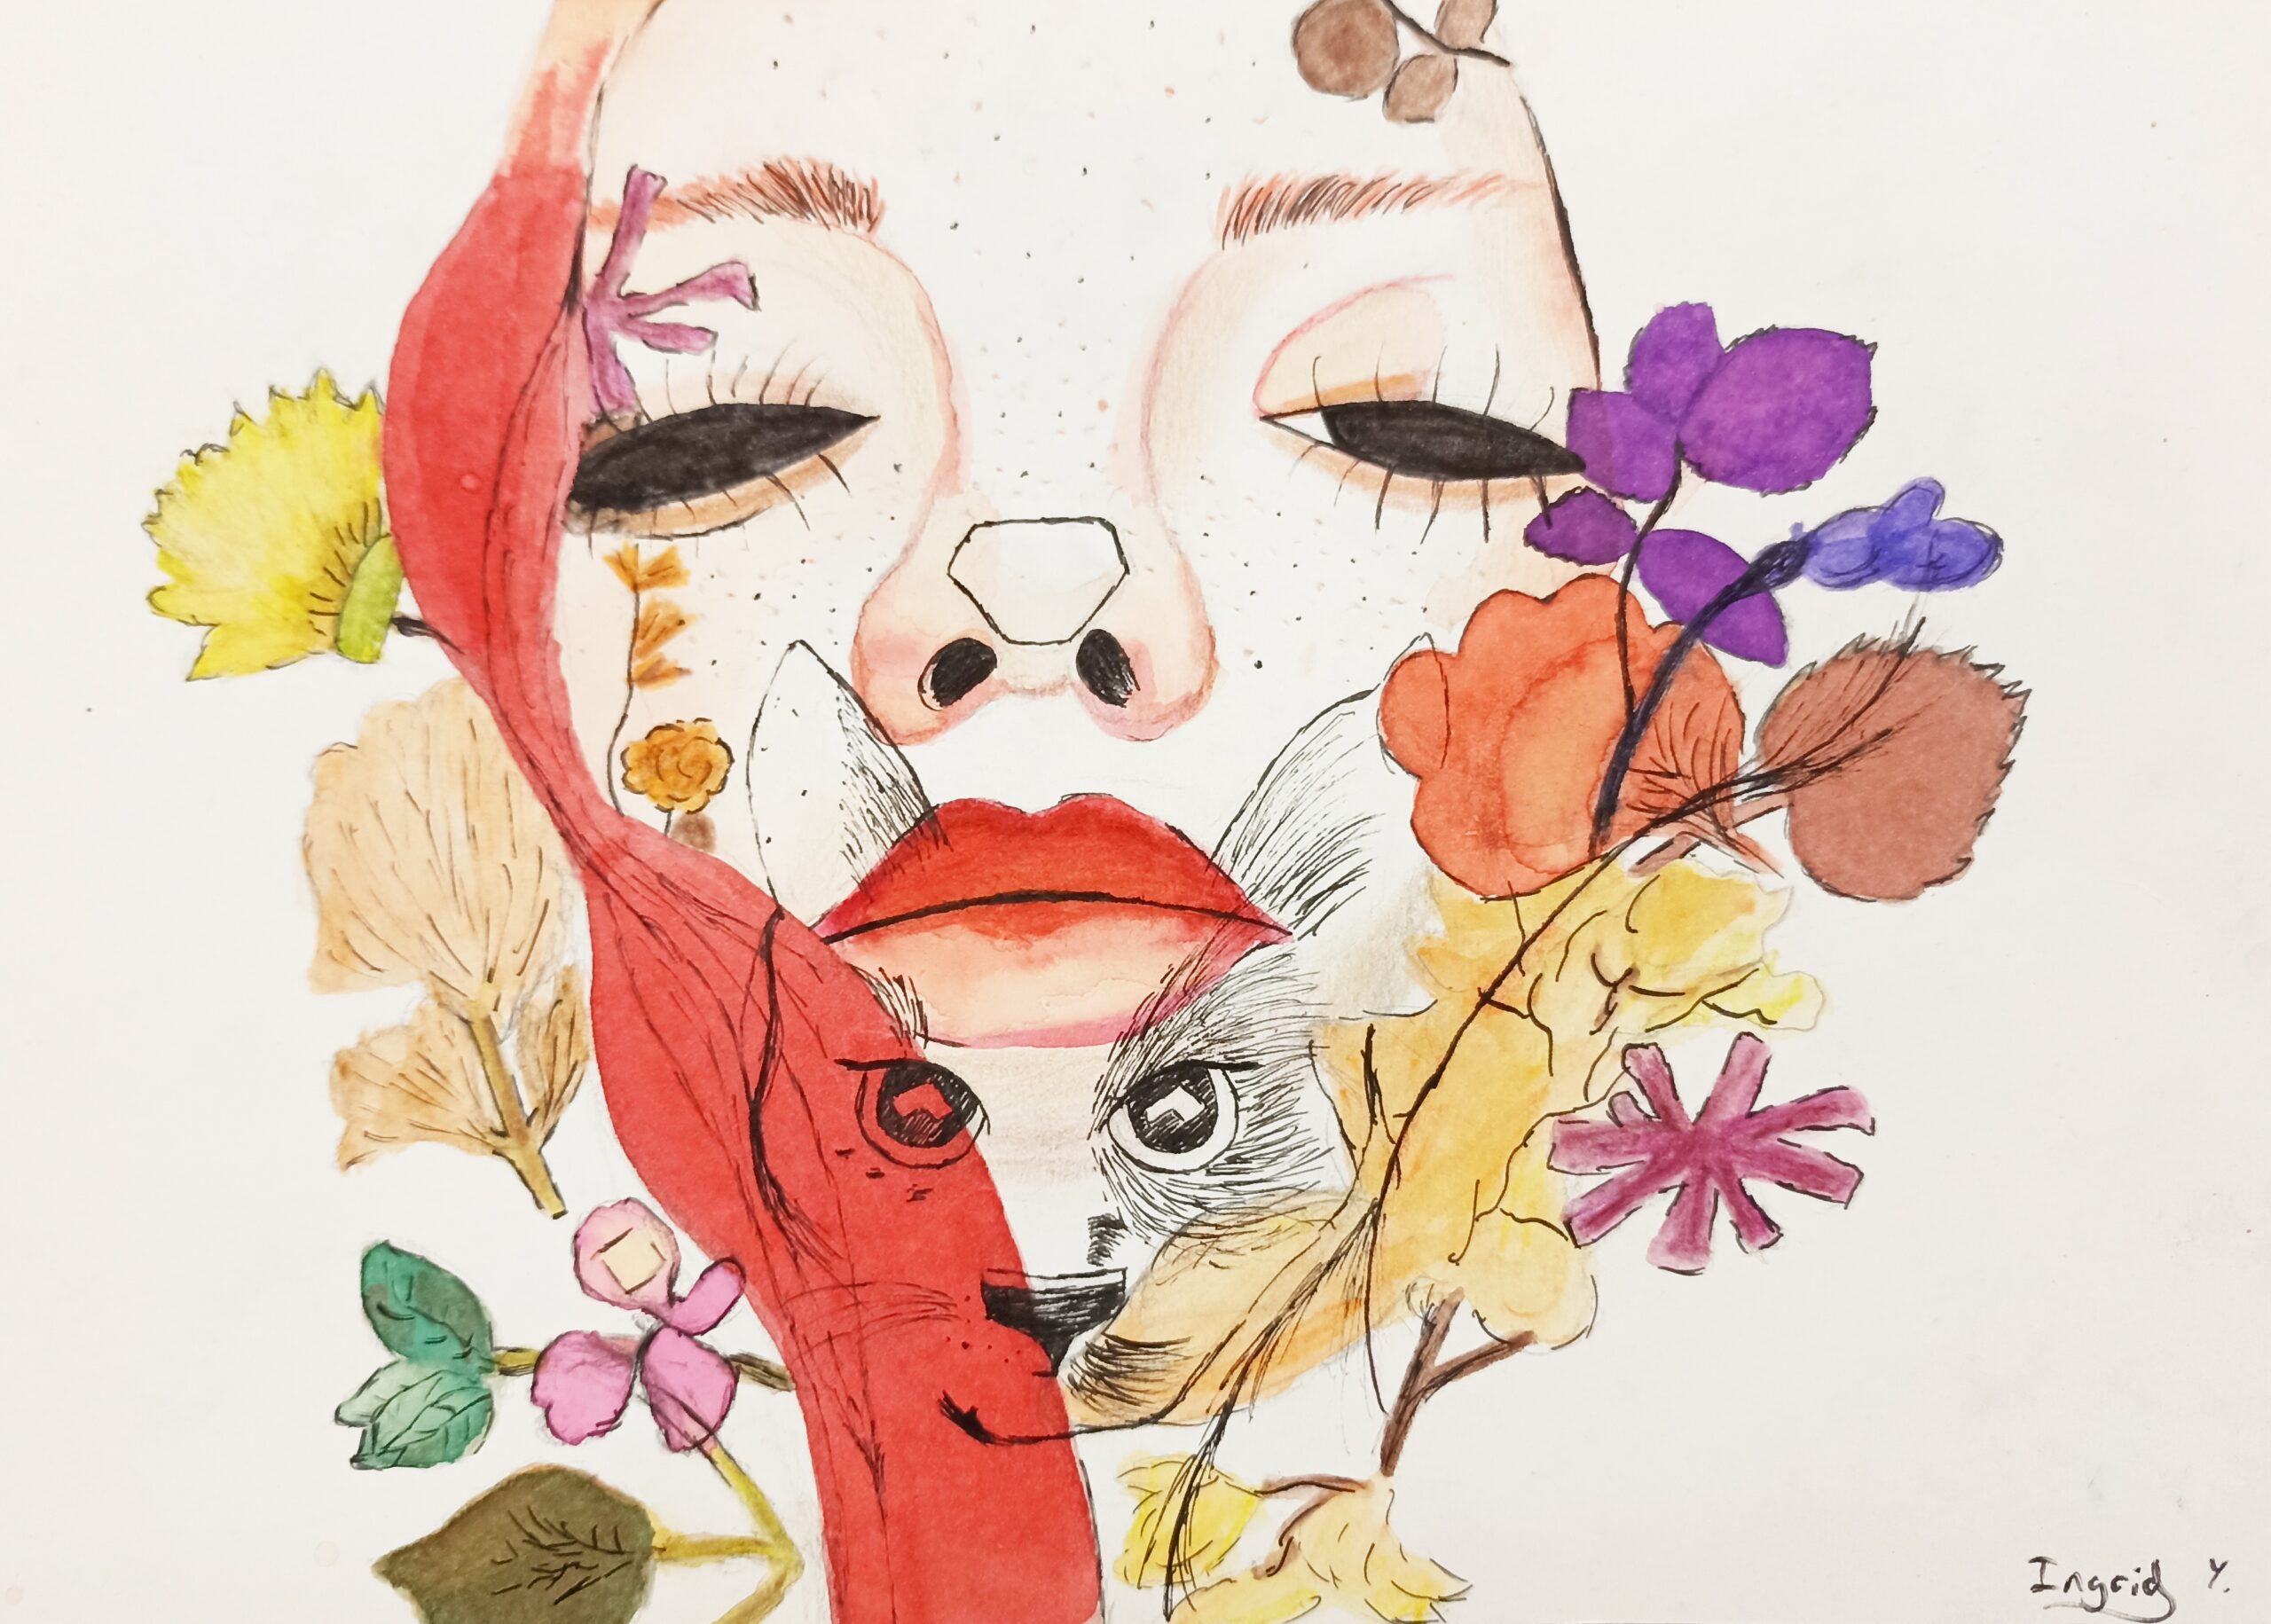 Acuarela y tinta china de Ingrid Y. 12 años